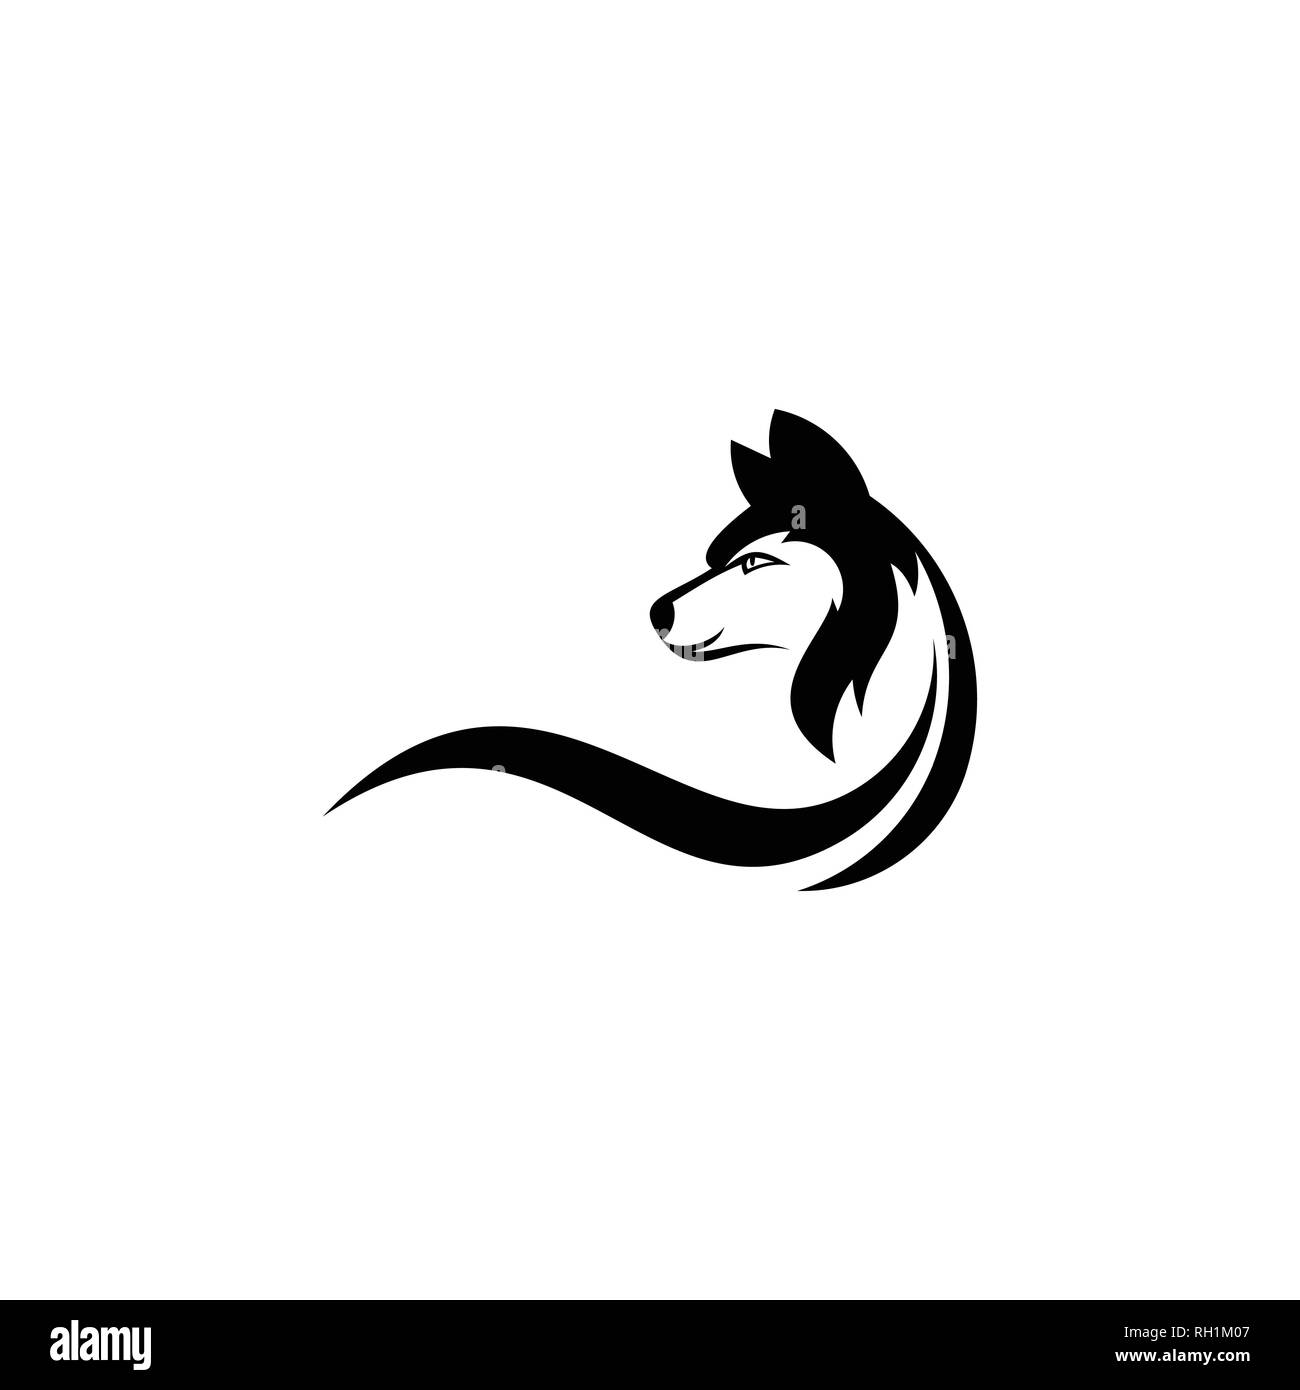 Lupo vettore grafico, la silhouette di un lupo, illustrazione vettoriale. Illustrazione Vettoriale